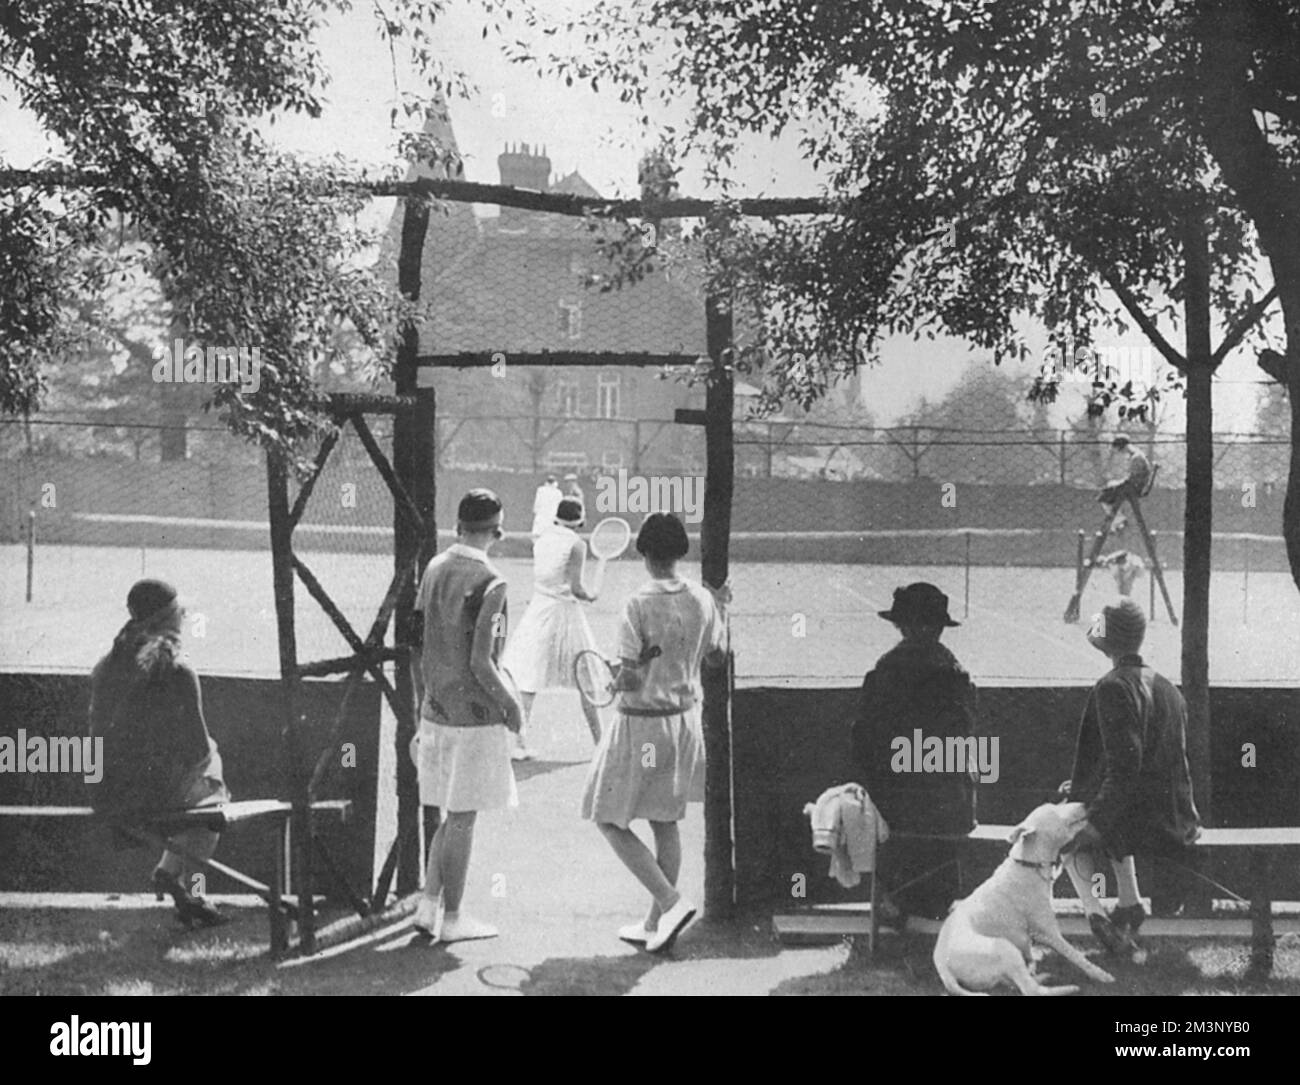 Malerischer Blick auf die Tennisplätze im West Side Country Club in Ealing mit Zuschauern und Wettbewerbern, die spielen. Datum: 1928 Stockfoto